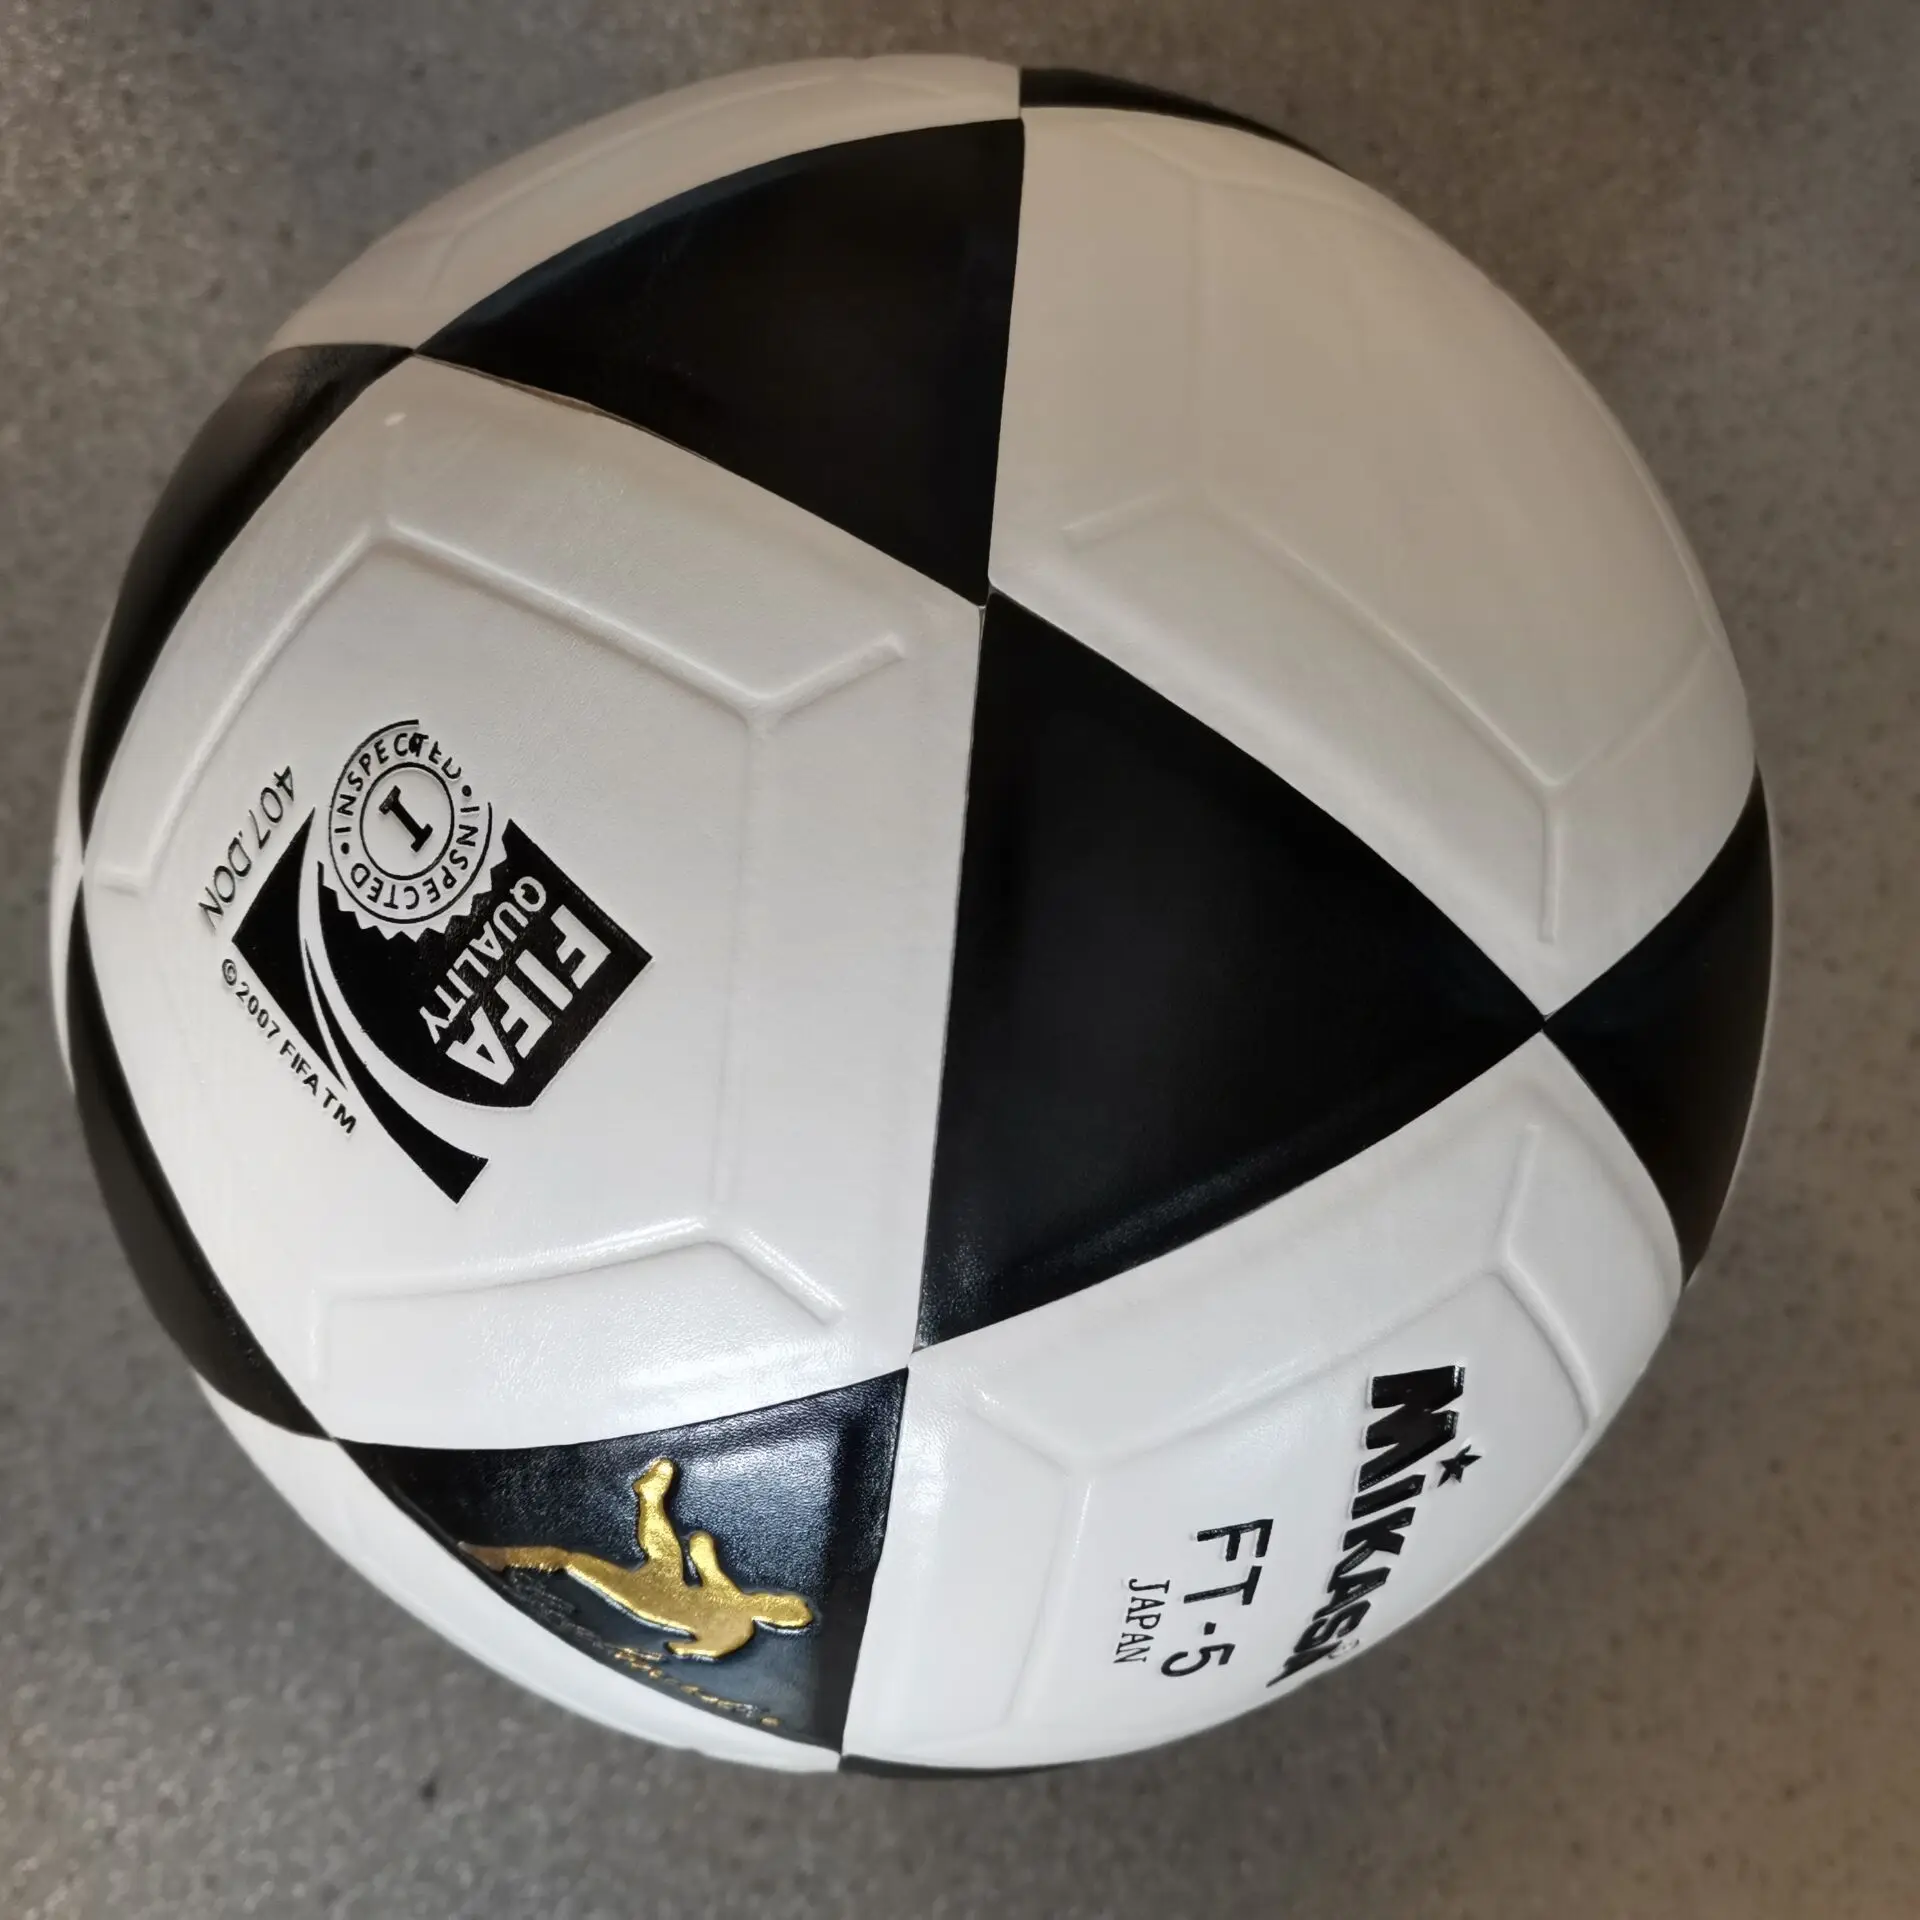 Мяч PVU Balls Лига MIKASA футбольный размер мяч гол 5 Новинка футбольный мяч для тренировок на открытом воздухе футбольный мяч PVU Размер 5 F